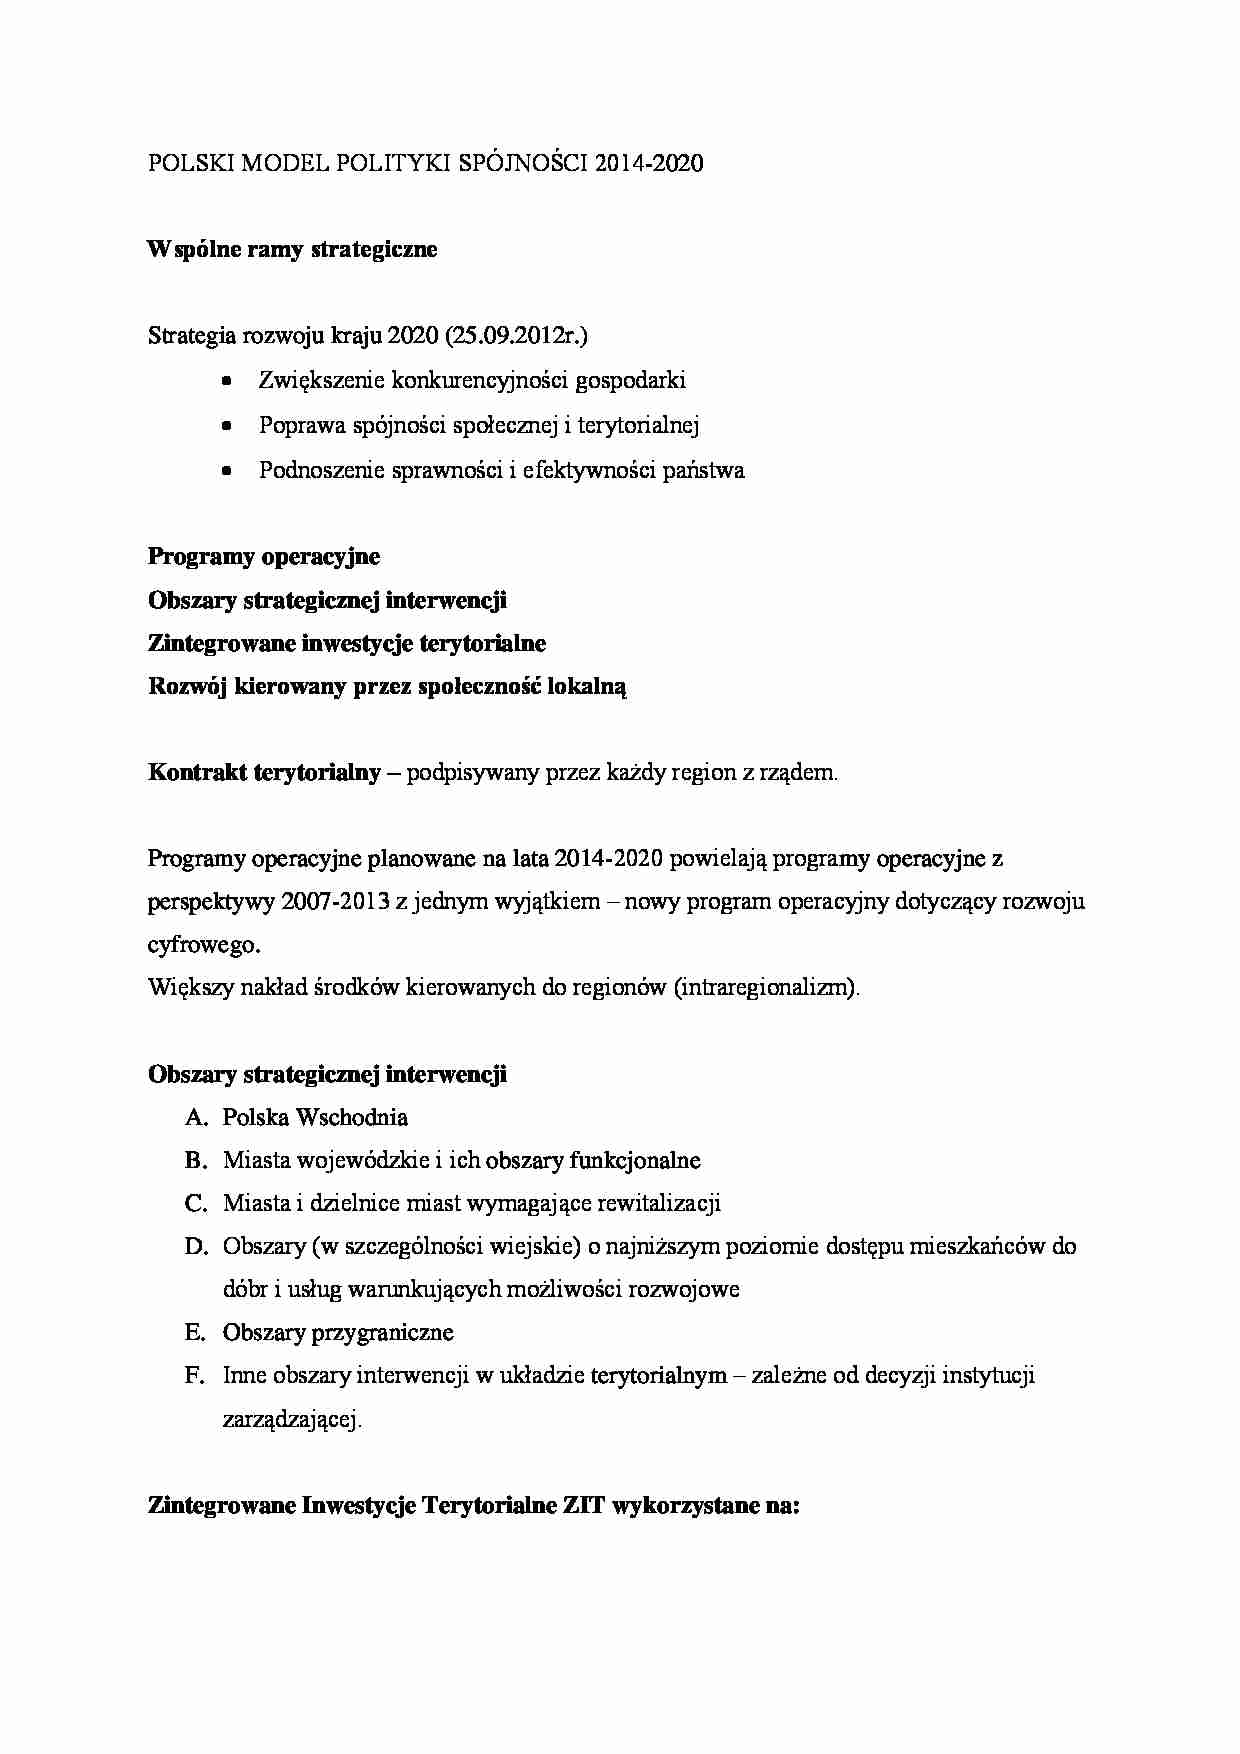 Polski model polityki spójności 2014-2020 - strona 1